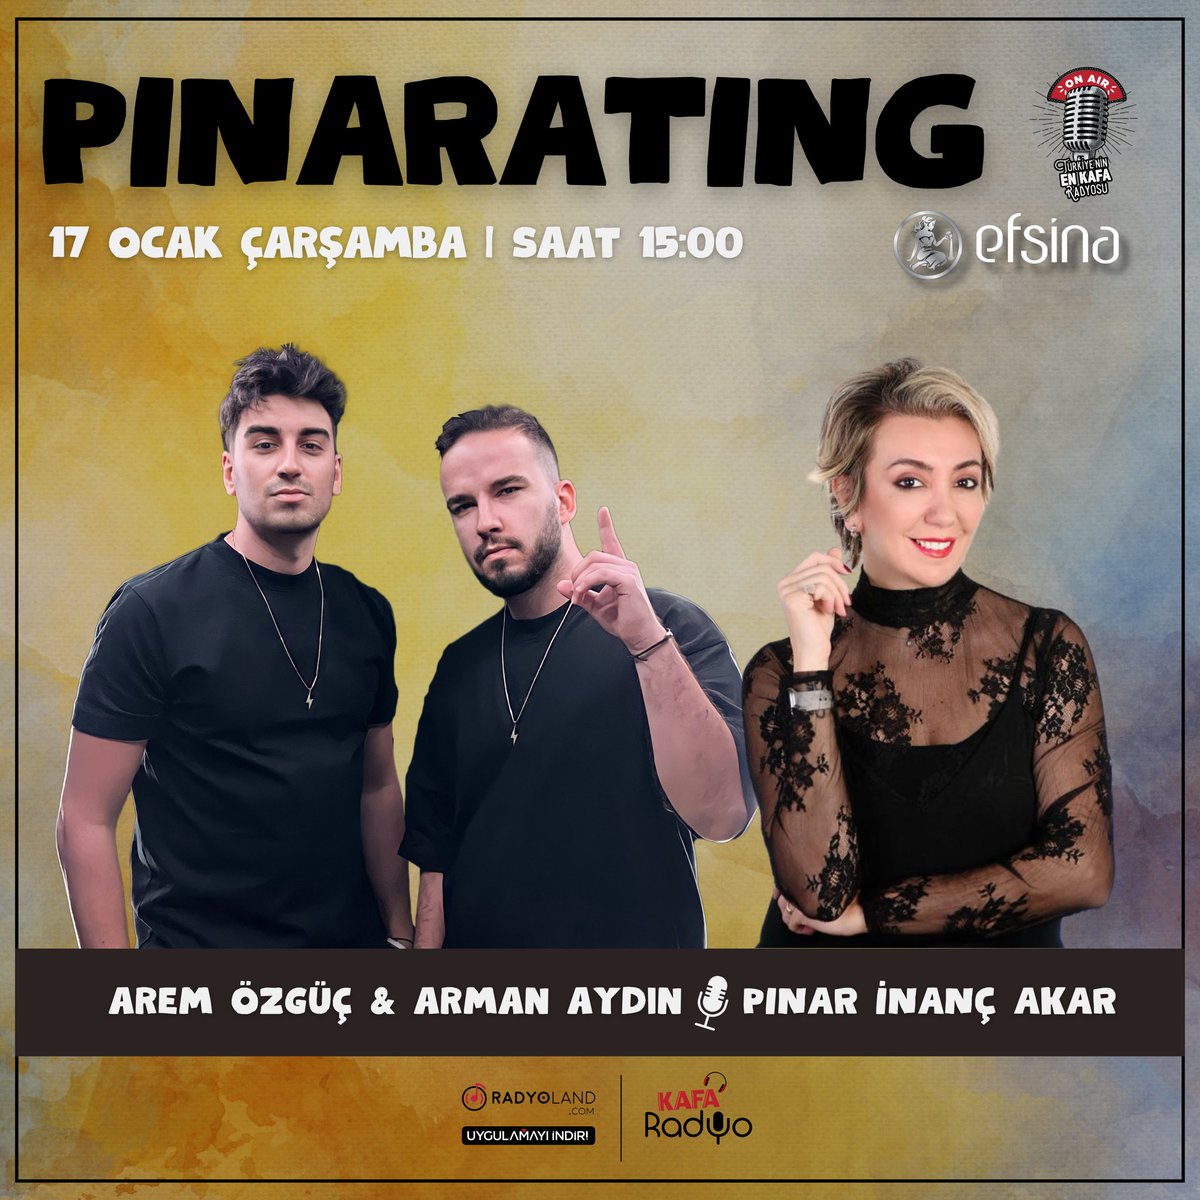 🎙️ @armanaydin & @aremozguc Pınarating’e konuk oluyor ☕️ 📌 Efsina’nın sunduğu Pınar İnanç Akar ile Pınarating, bugün saat 15.00’te KAFA Radyo’da sizlerle 📻 ☺️ @pinarating @efsinasalt #KAFARadyo #Pınarating #ArmanAydın #AremÖzgüç #Radyoland